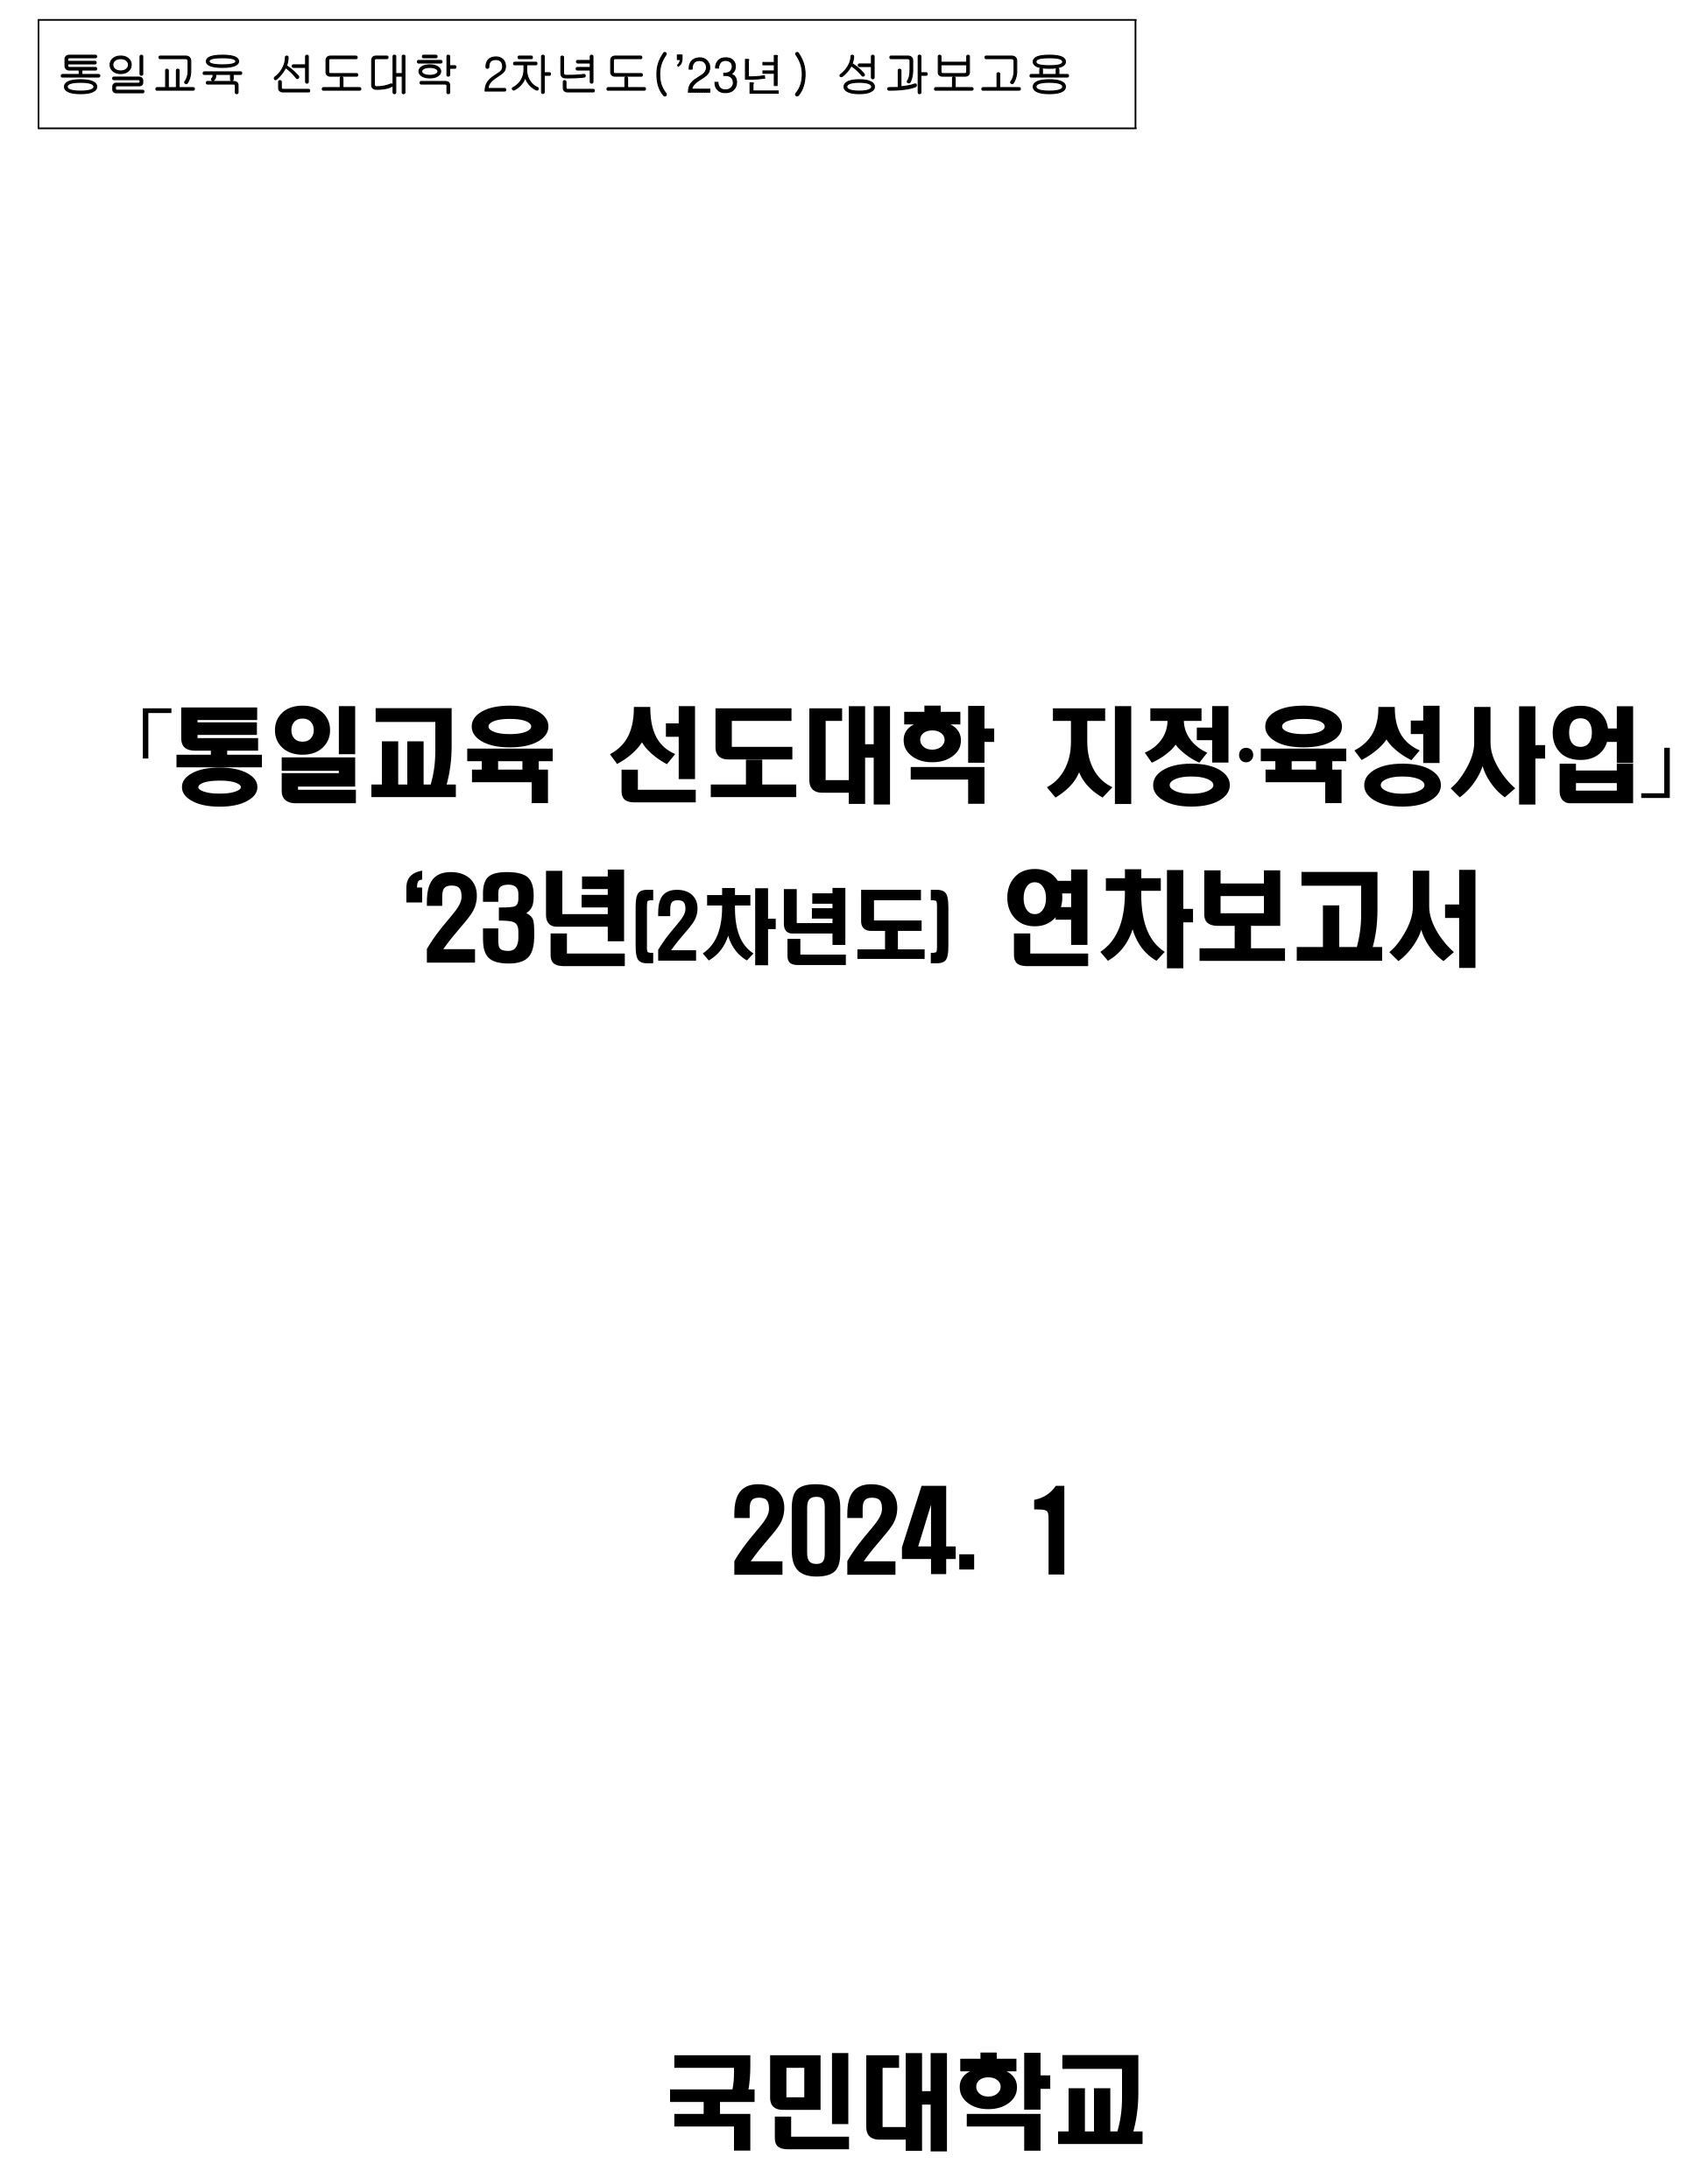 최신자료-통일교육 선도대학 2023년 성과보고서(국민대학교)